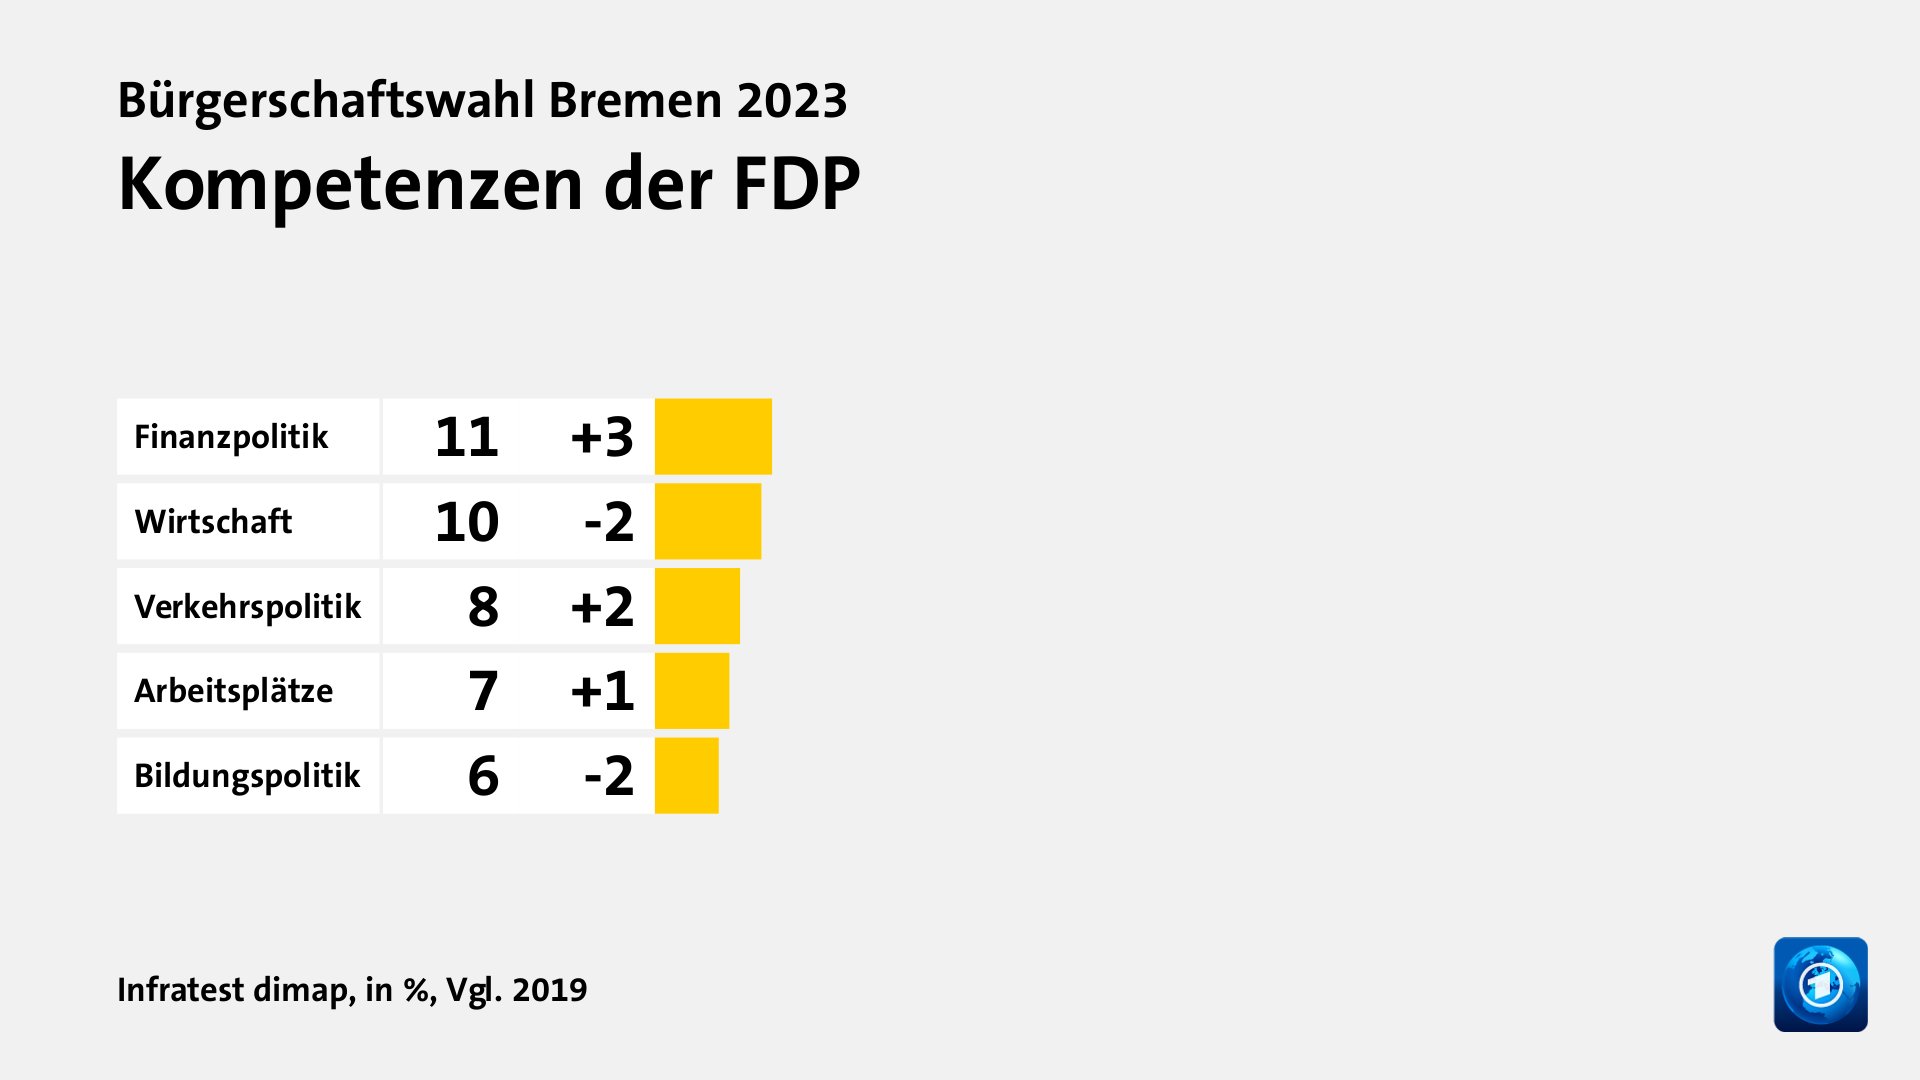 Kompetenzen der FDP, in %, Vgl. 2019: Finanzpolitik 11, Wirtschaft 10, Verkehrspolitik 8, Arbeitsplätze 7, Bildungspolitik 6, Quelle: Infratest dimap